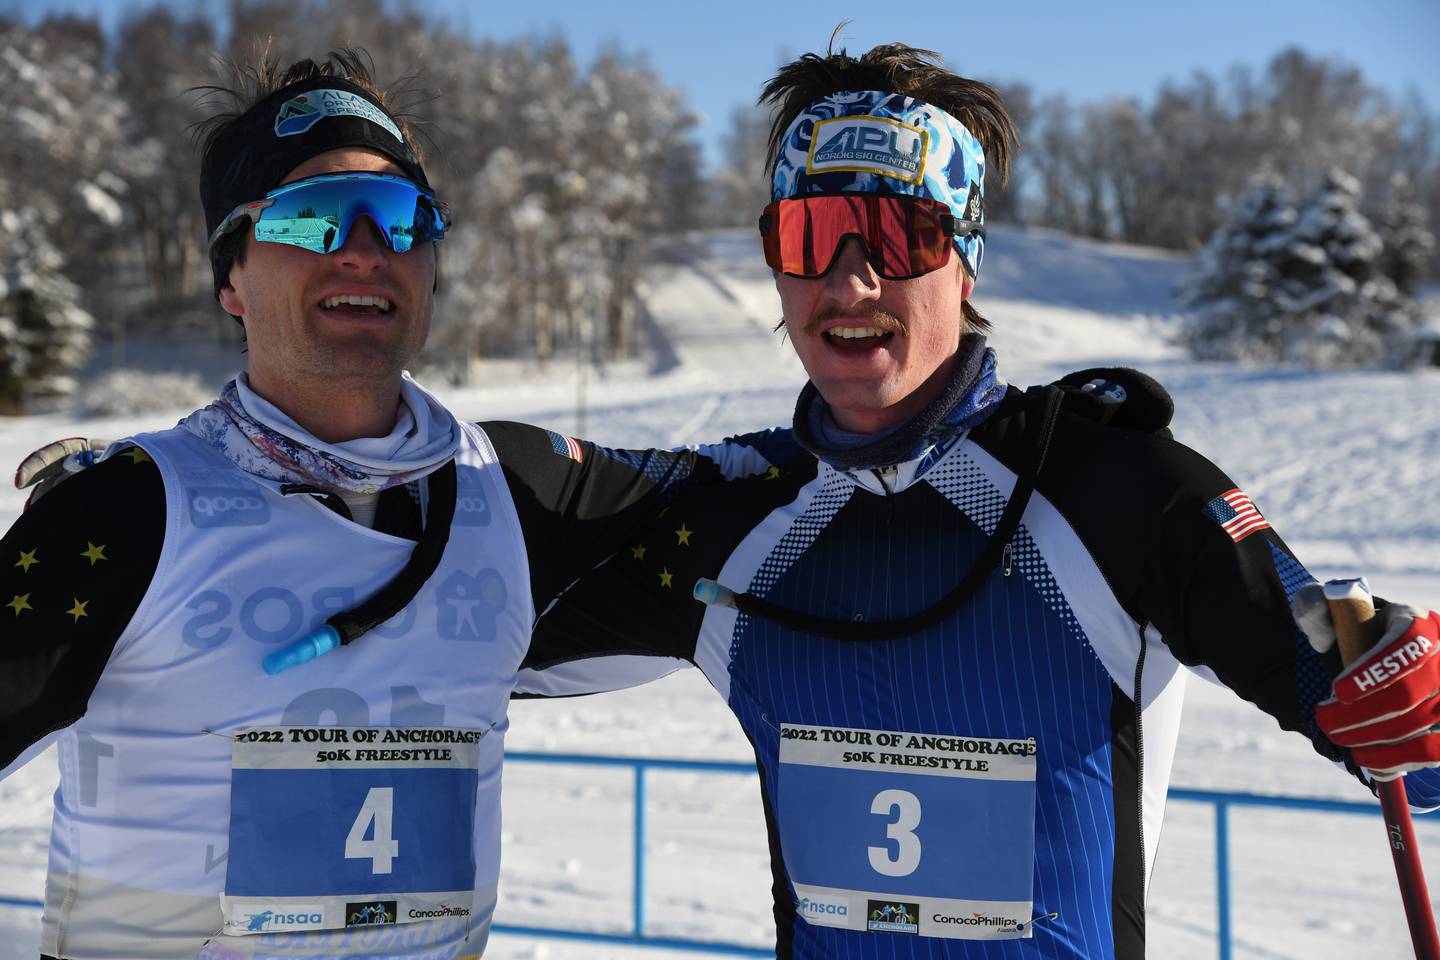 David Norris and Thomas OHara, Cross Country Ski, Cross Country Ski Race, Tour of Anchorage, Ski Race